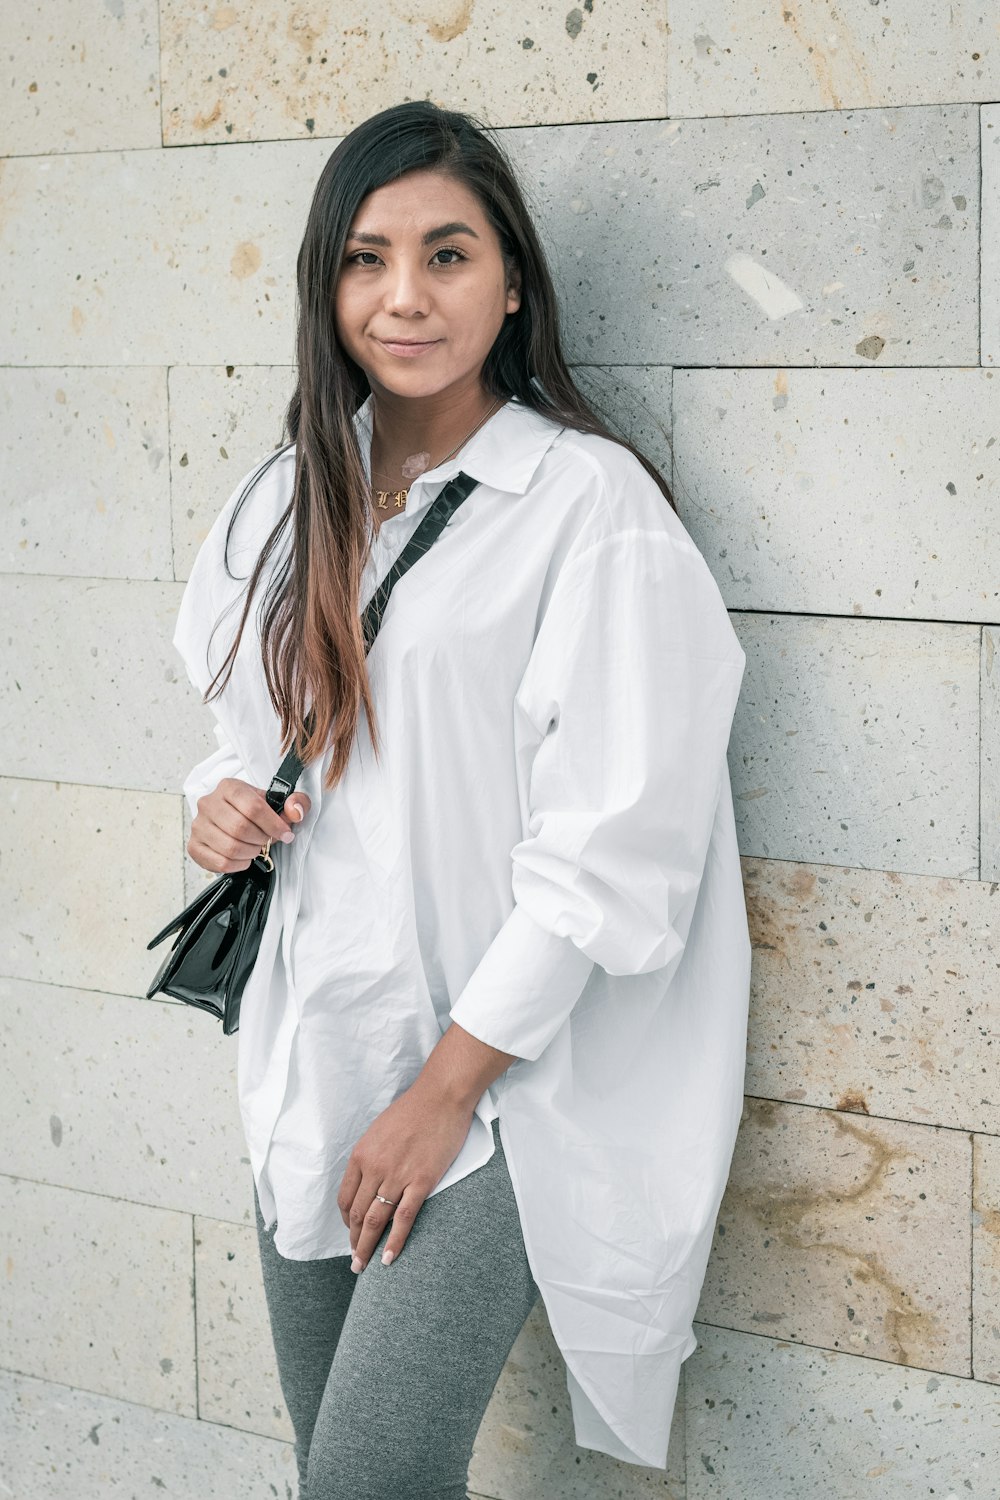 sistema Cuerpo Personal Foto Mujer con camisa blanca de manga larga – Imagen Gris gratis en Unsplash